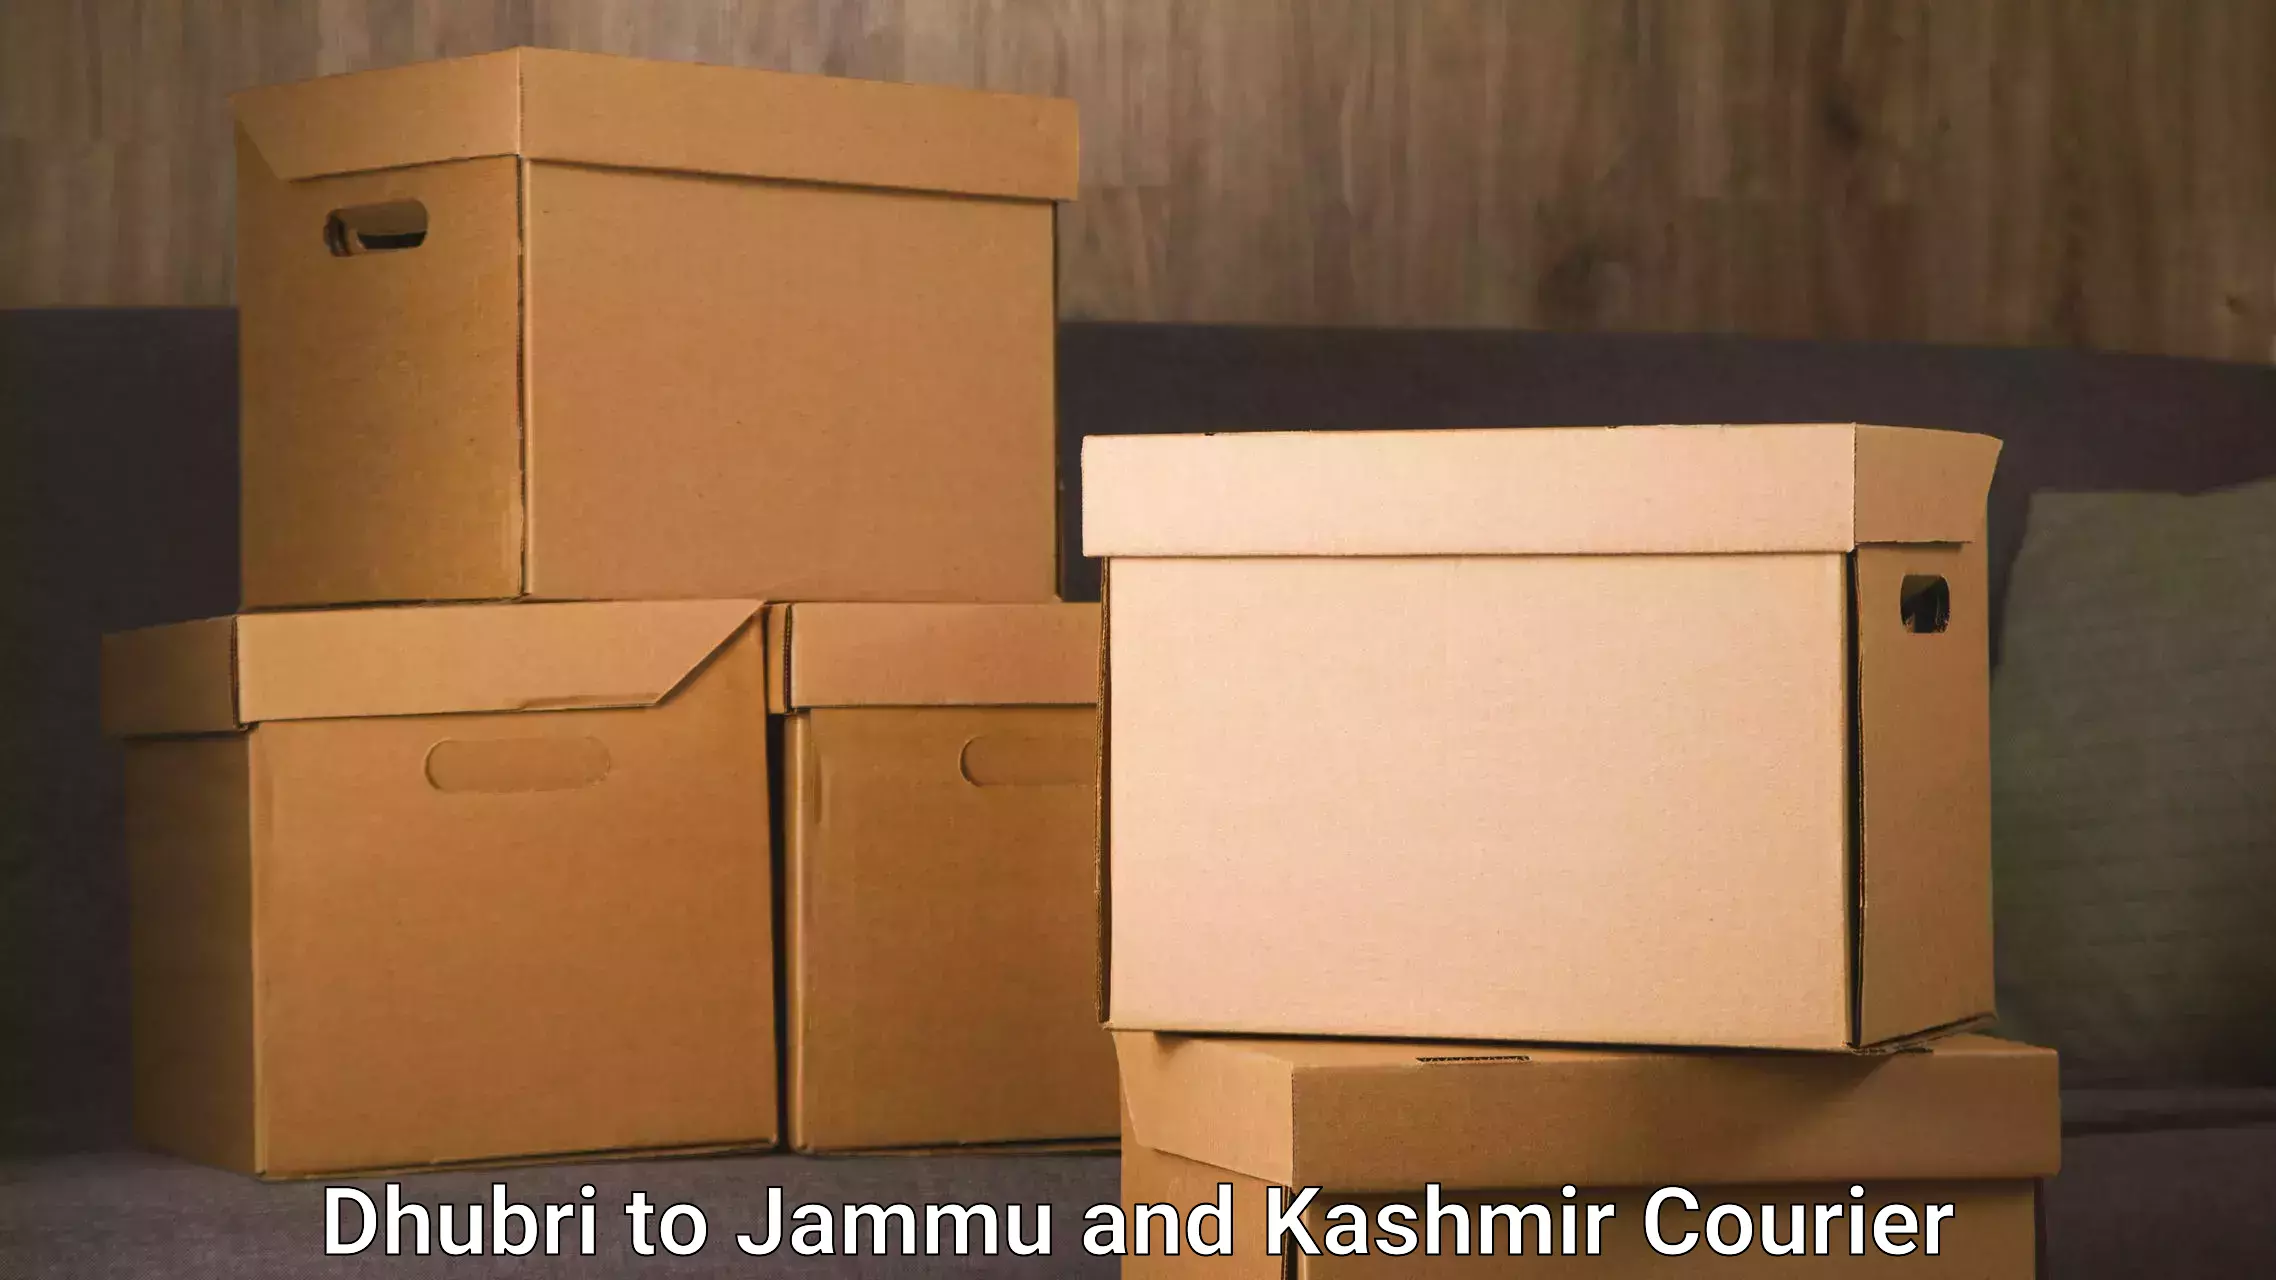 International courier networks Dhubri to Kargil